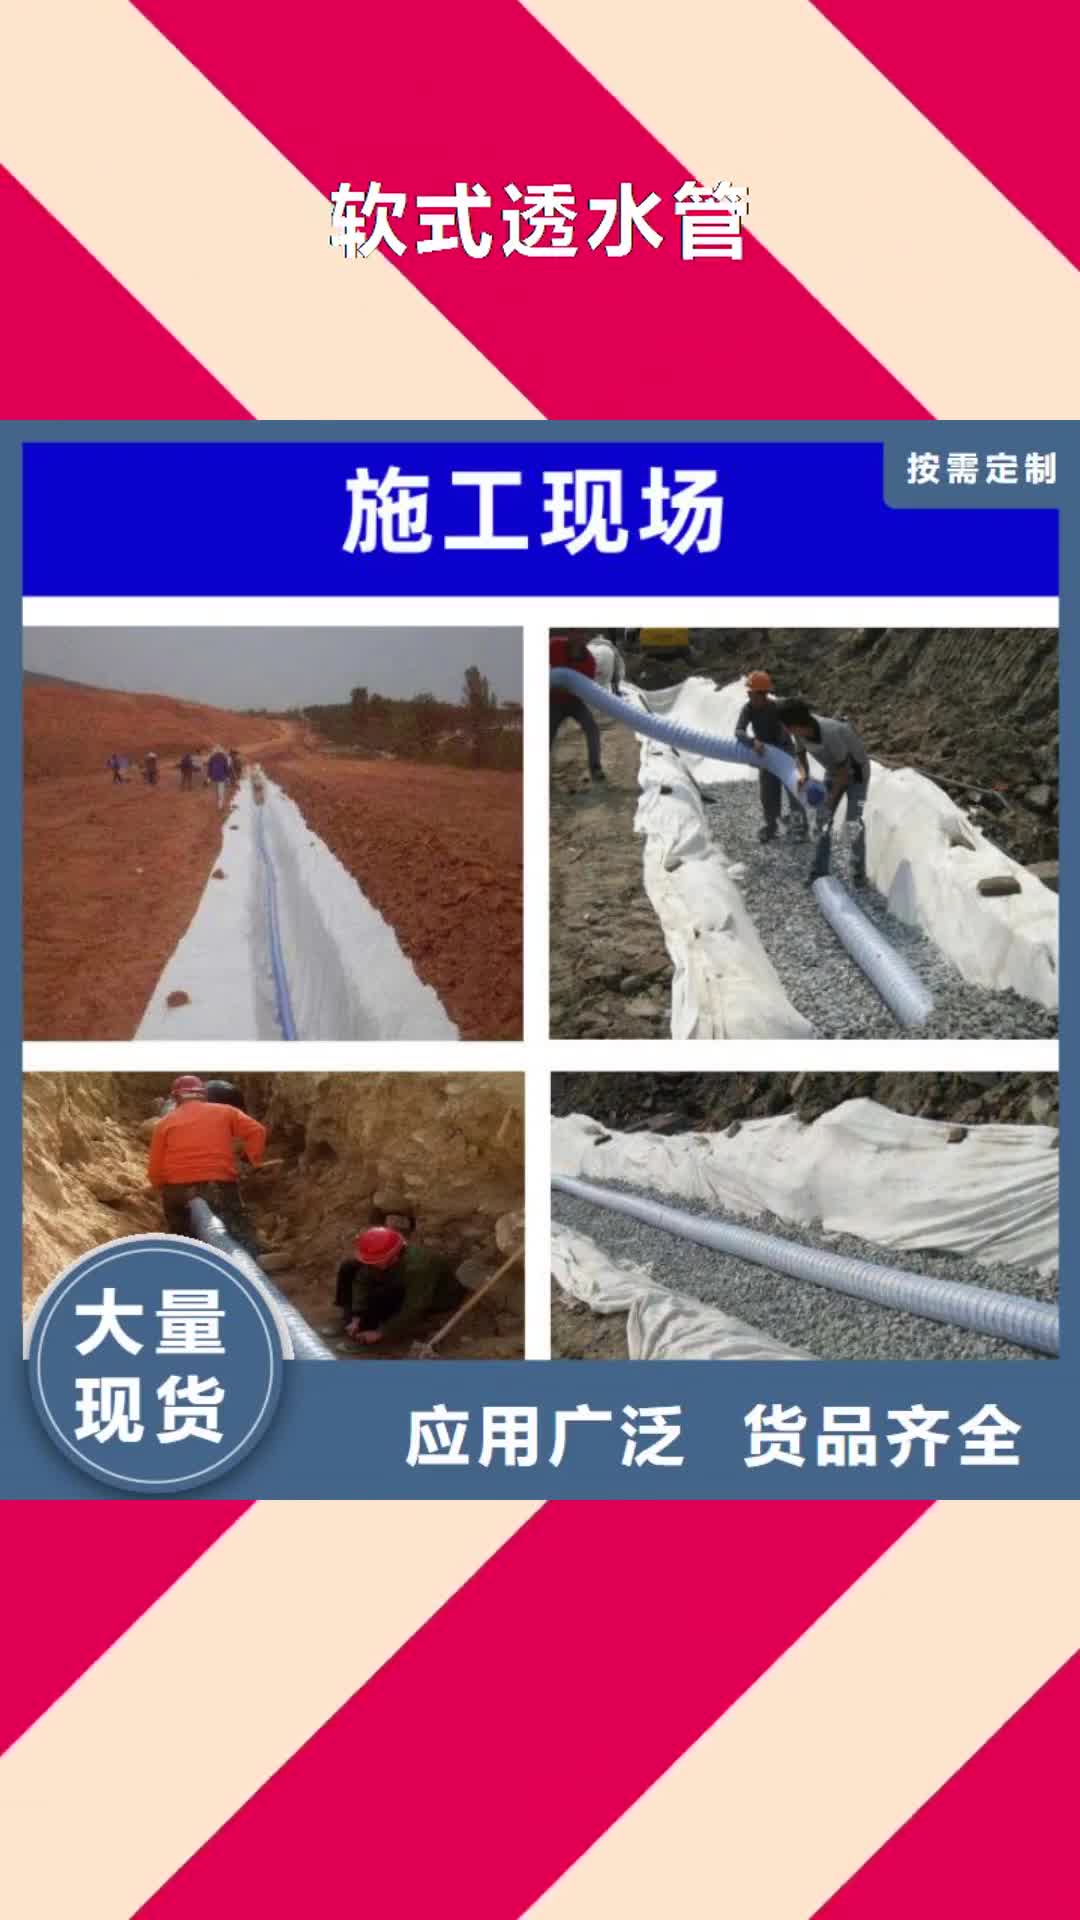 贵阳【软式透水管】,聚丙烯腈纤维专业供货品质管控